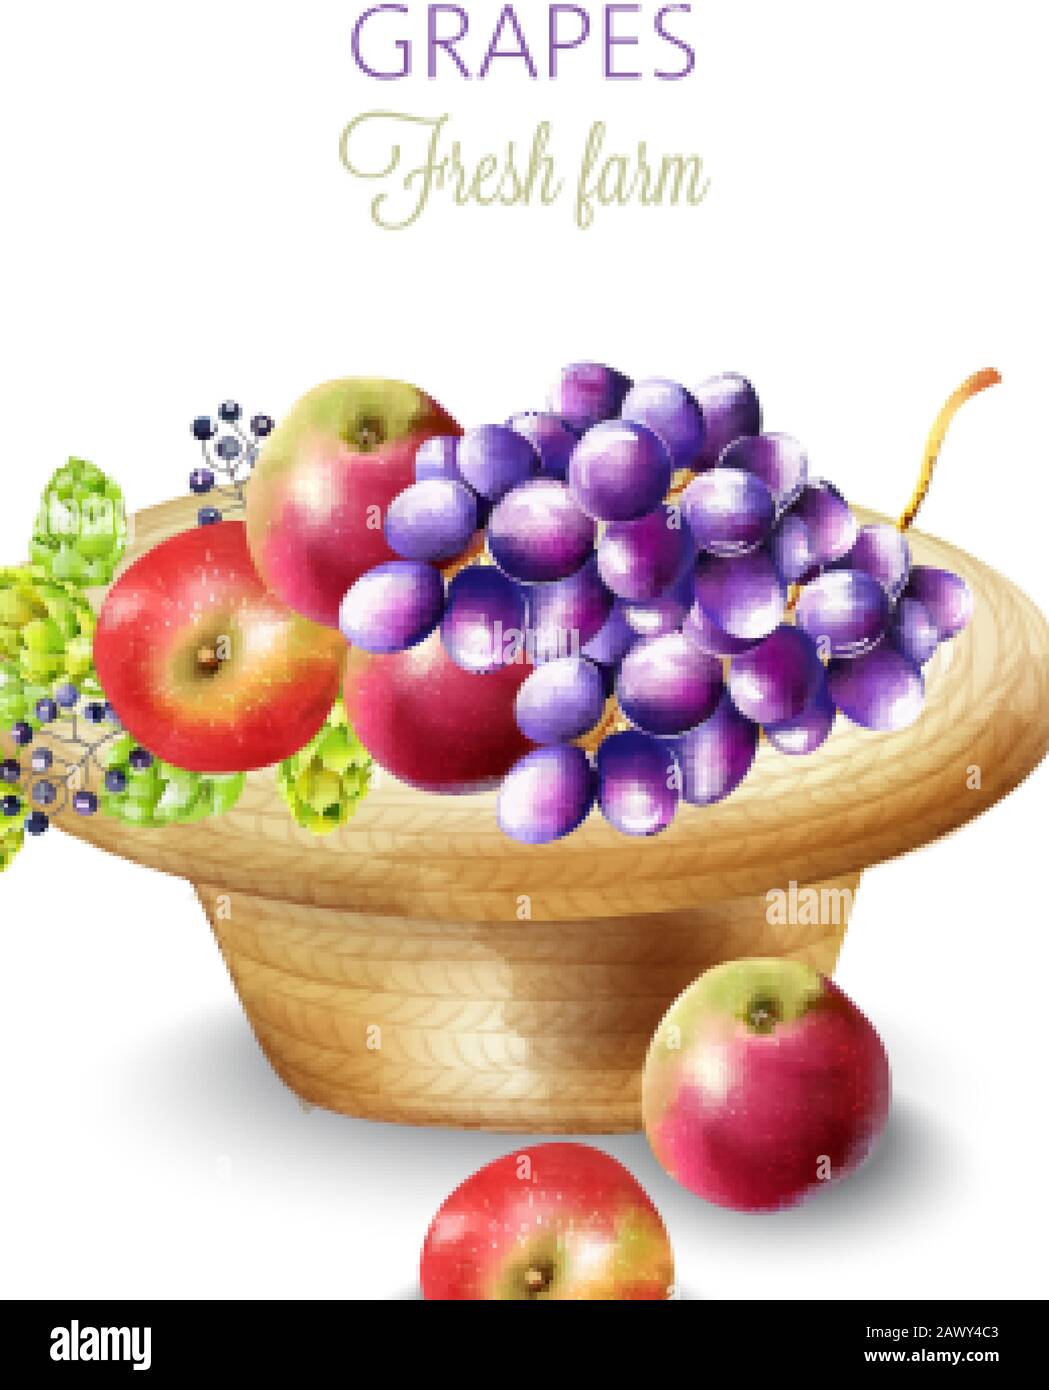 Composition de produits agricoles frais avec raisins, pommes, artichauts et baies dans un chapeau. Vecteur Illustration de Vecteur